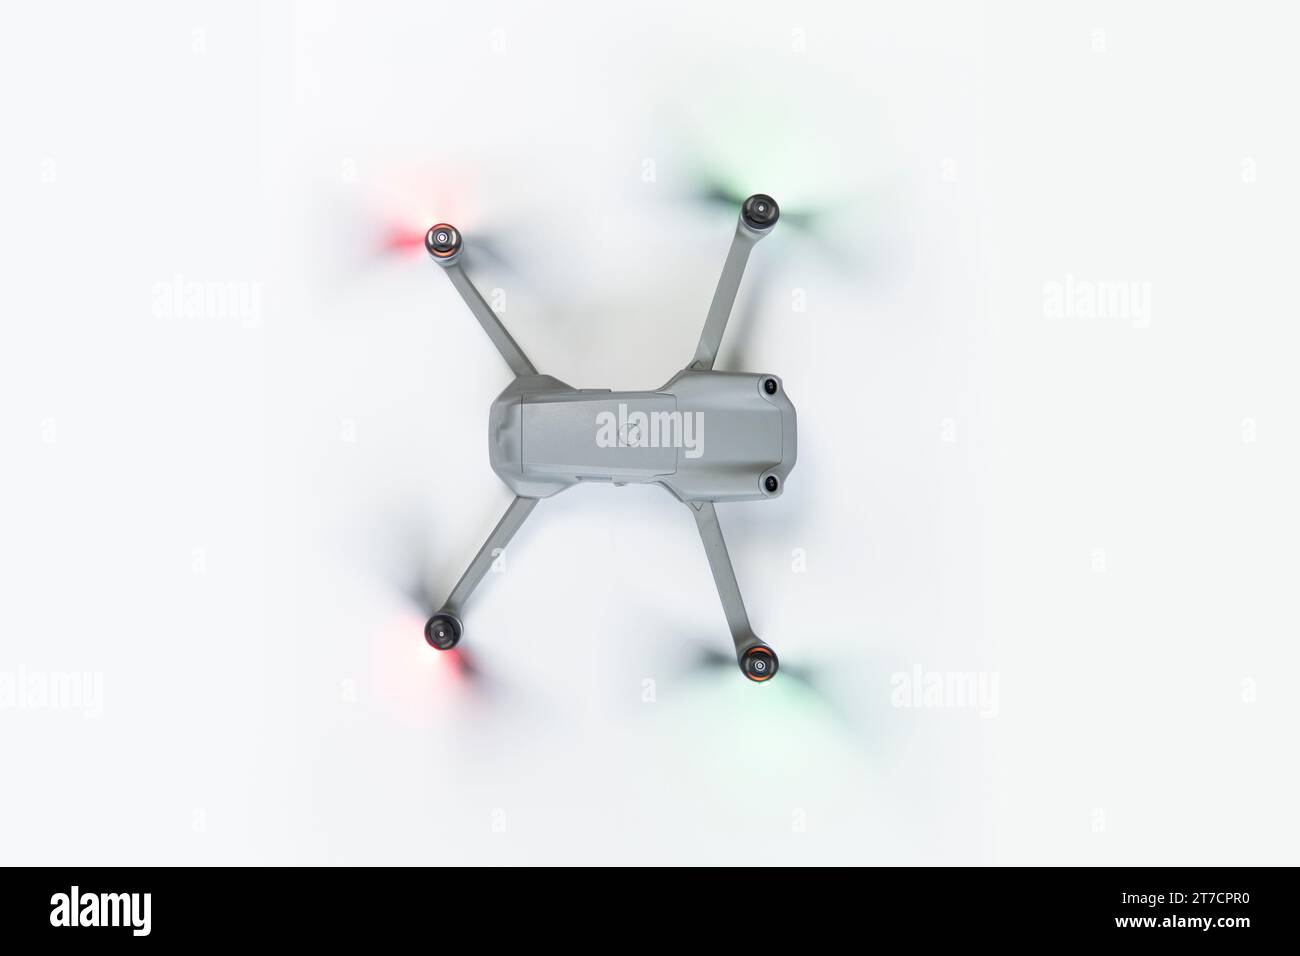 Drone aereo isolato su sfondo bianco. Vista dall'alto della copiatrice Quad con fotocamera digitale. Drone volante. Foto Stock